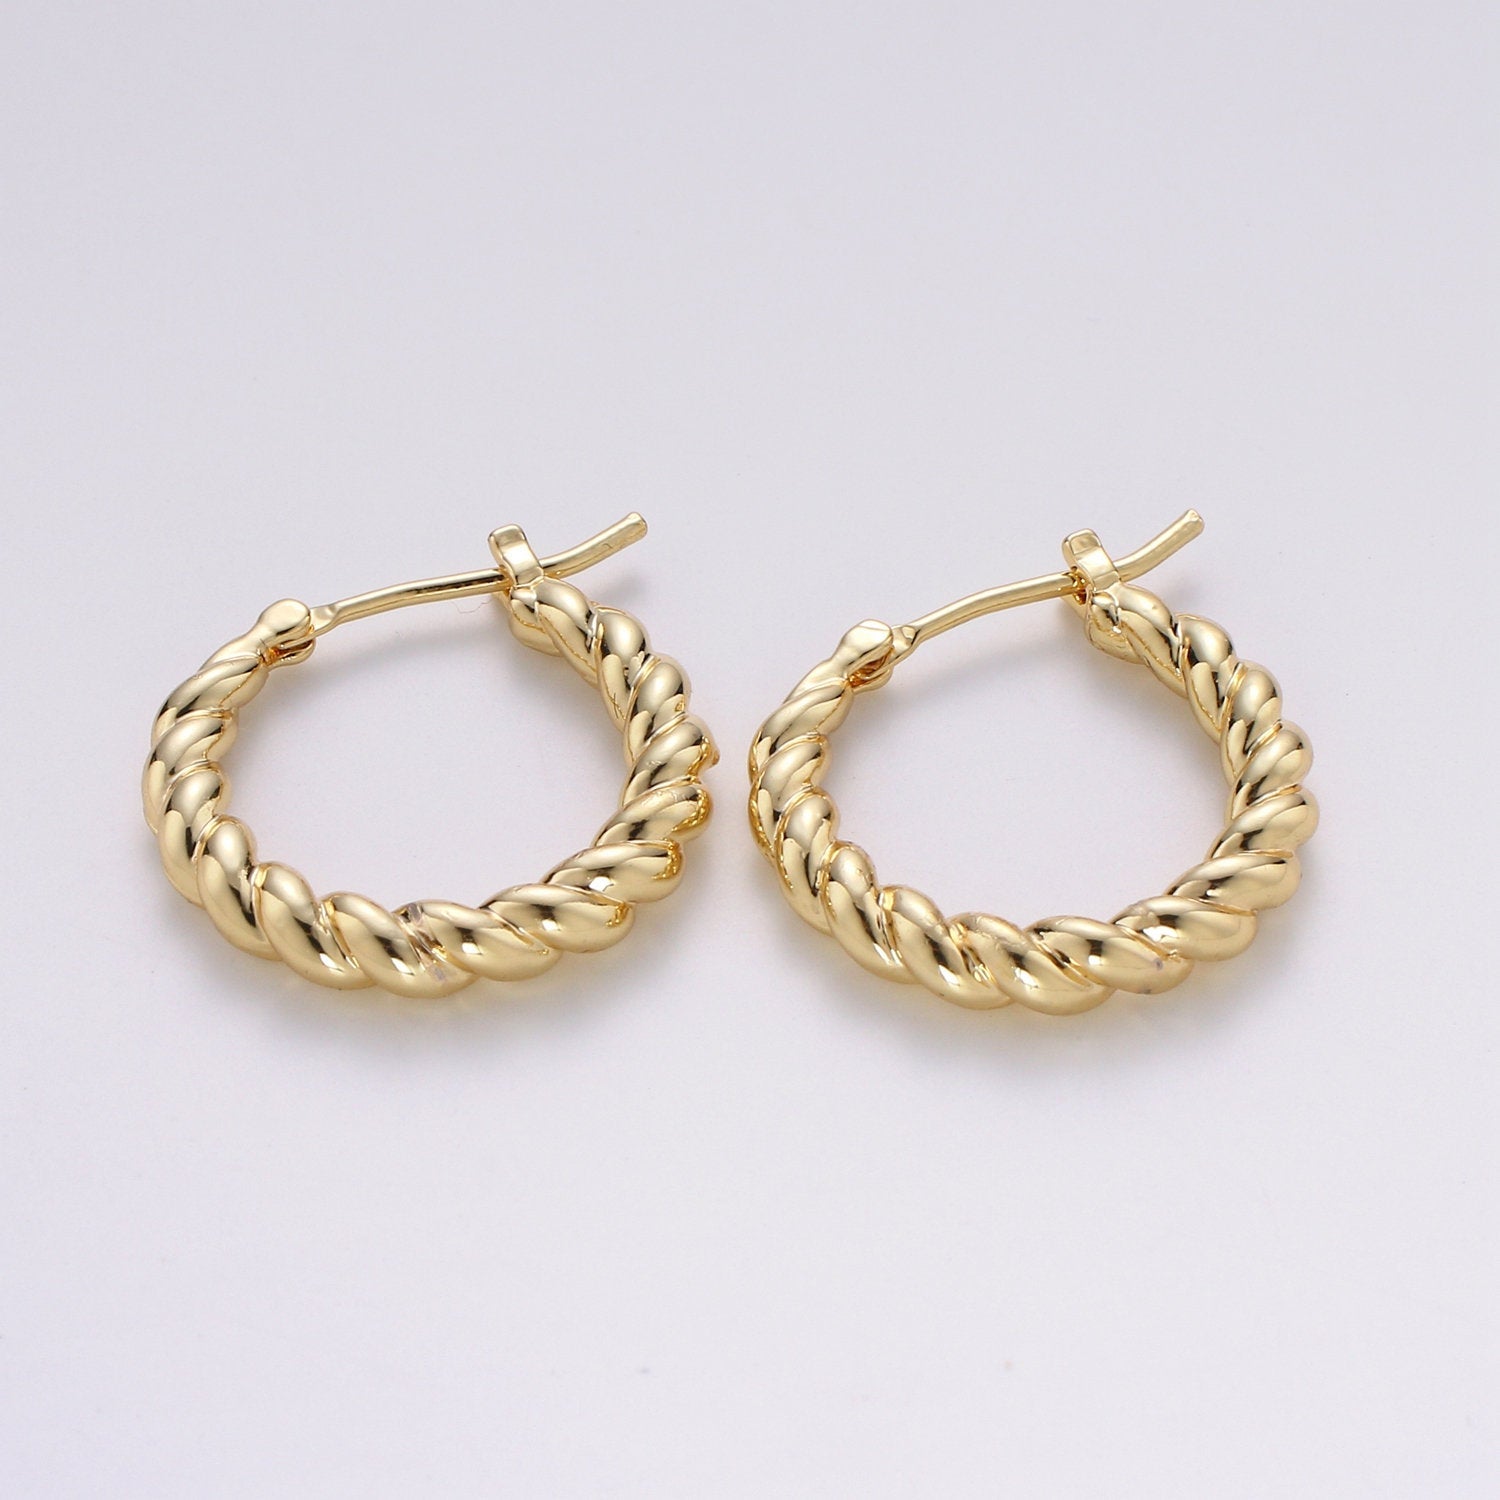 Small Twisted Hoop Earrings 20mm Hoop Earring Gold Vermeil Earr-1298 - DLUXCA